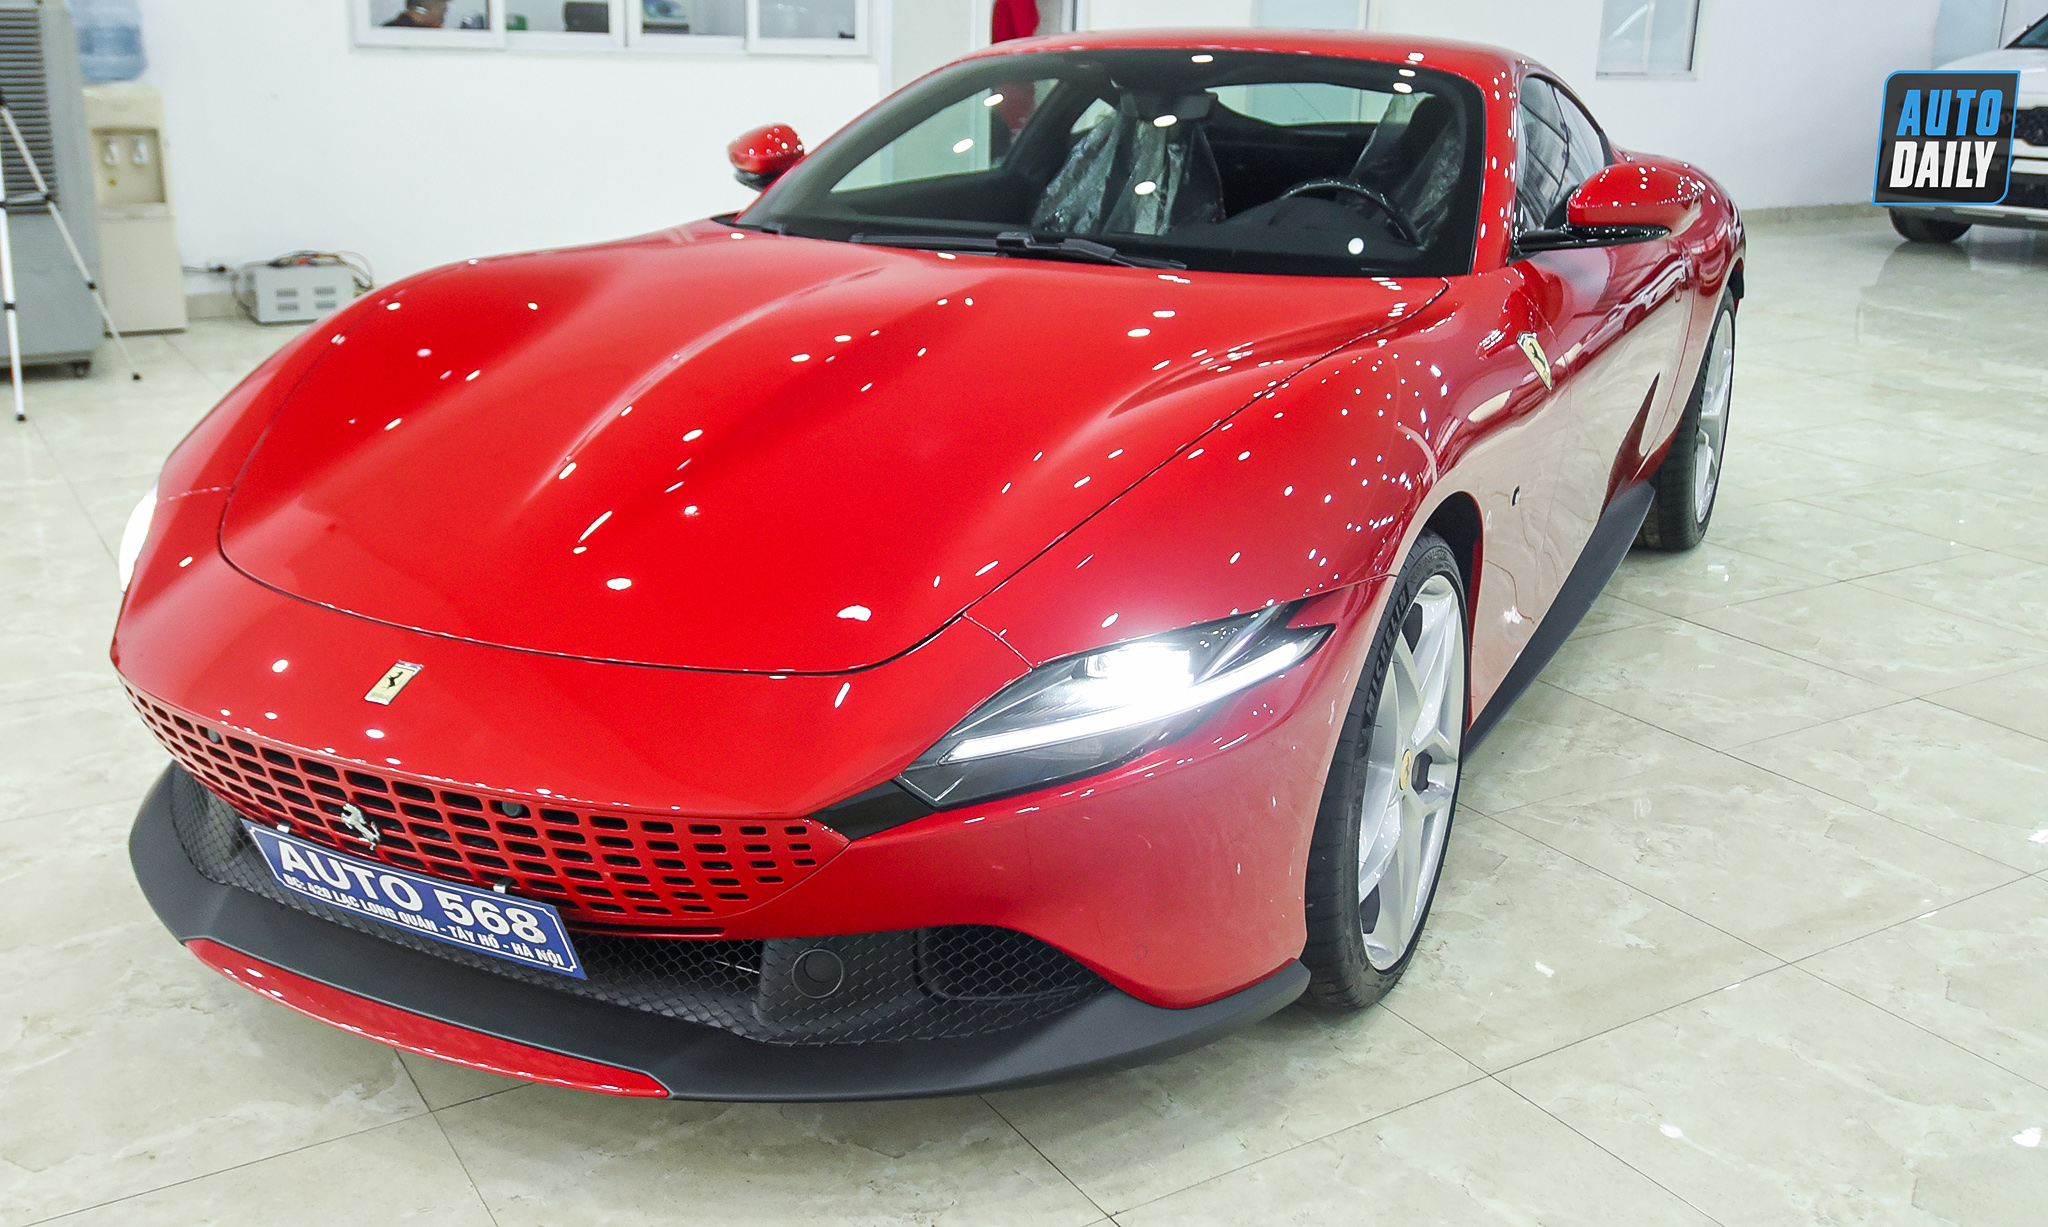 Chi tiết Ferrari Roma thứ 2 về Việt Nam, giá hơn 20 tỷ đồng ferrari-roma-autodaily-31.jpg